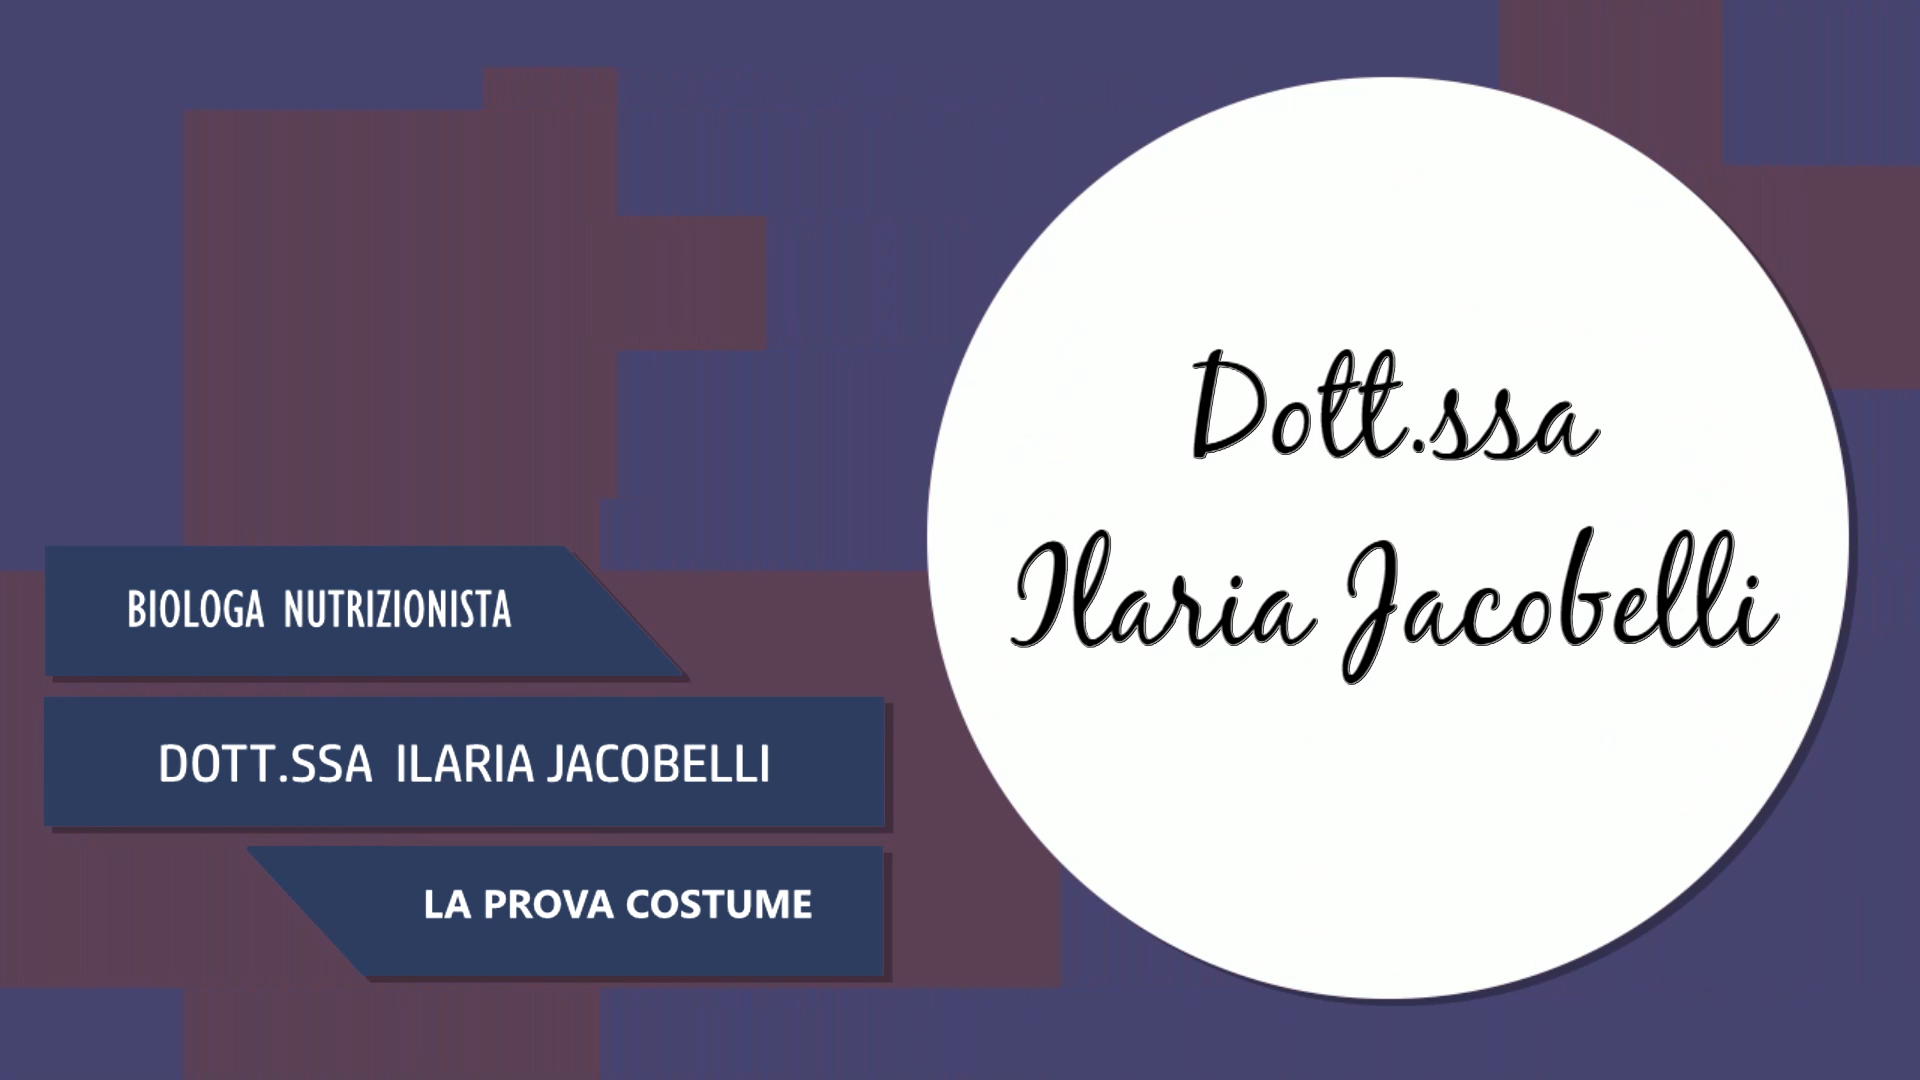 Intervista alla Dott.ssa Ilaria Jacobelli – La prova costume